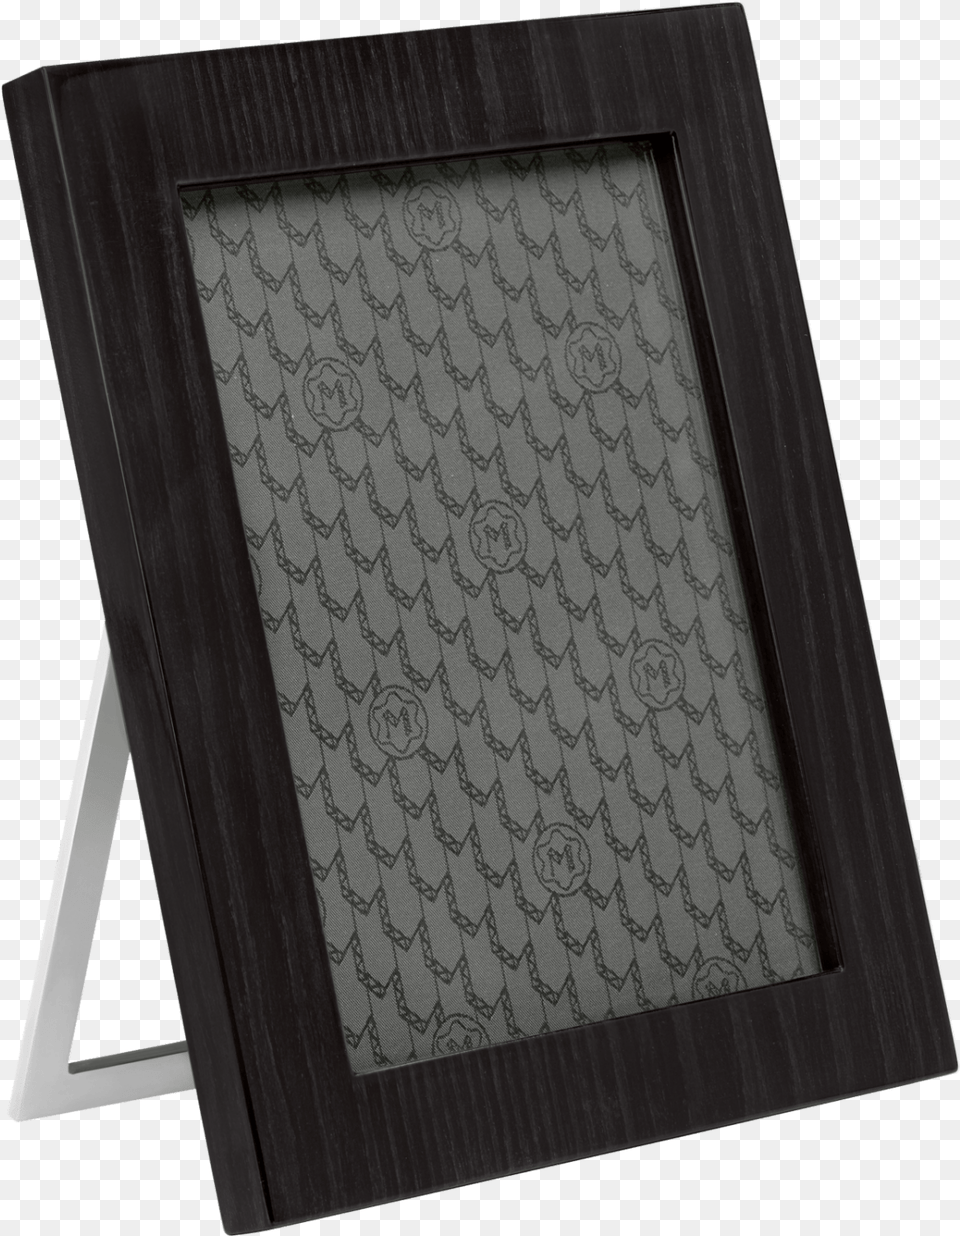 Black Wood Frame Picture Frames Desk Photo Frame, Blackboard, Slate Free Png Download